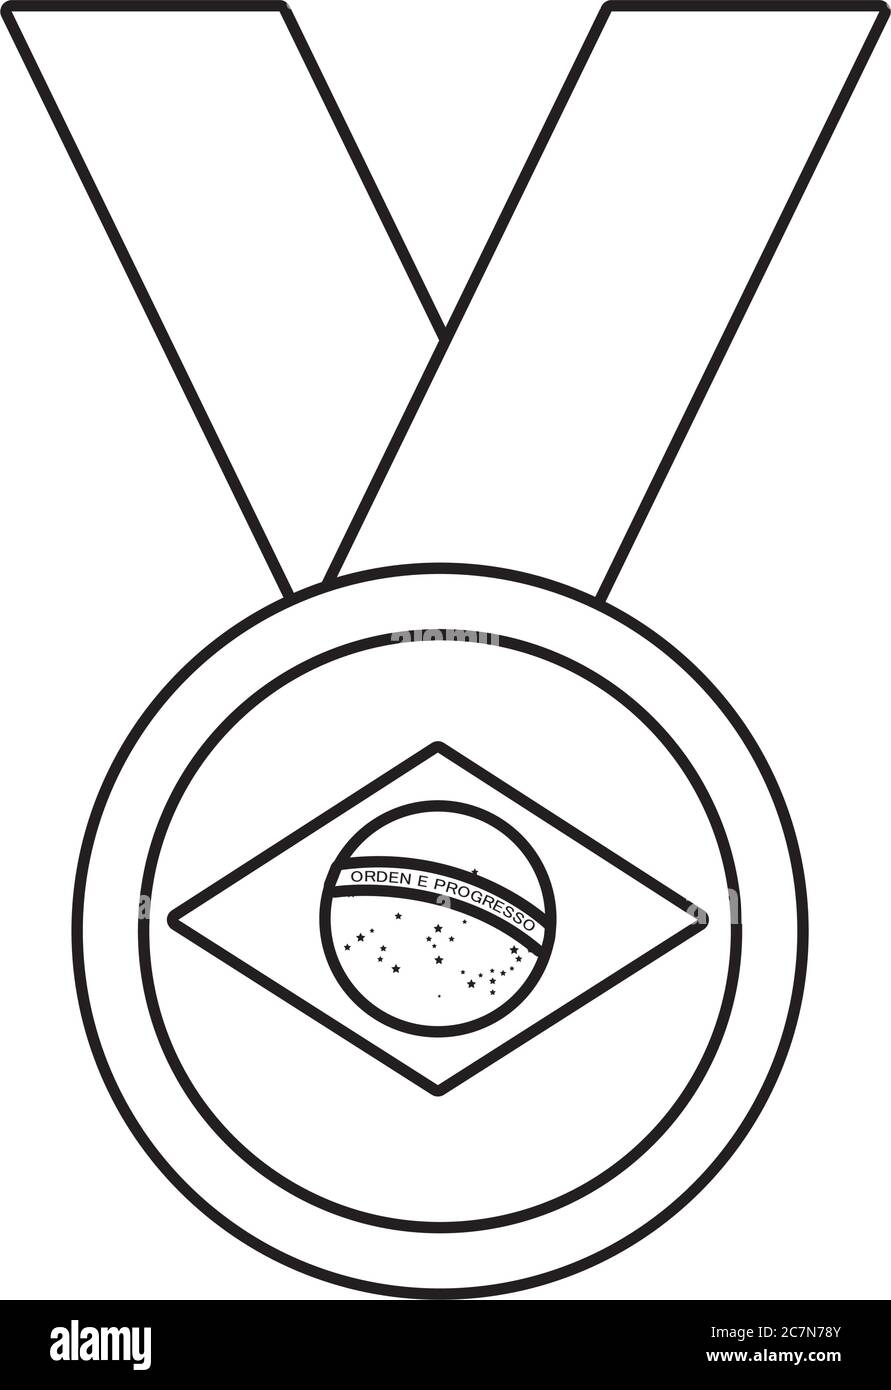 brazil flag in medal winner line style icon vector illustration design Stock Vector